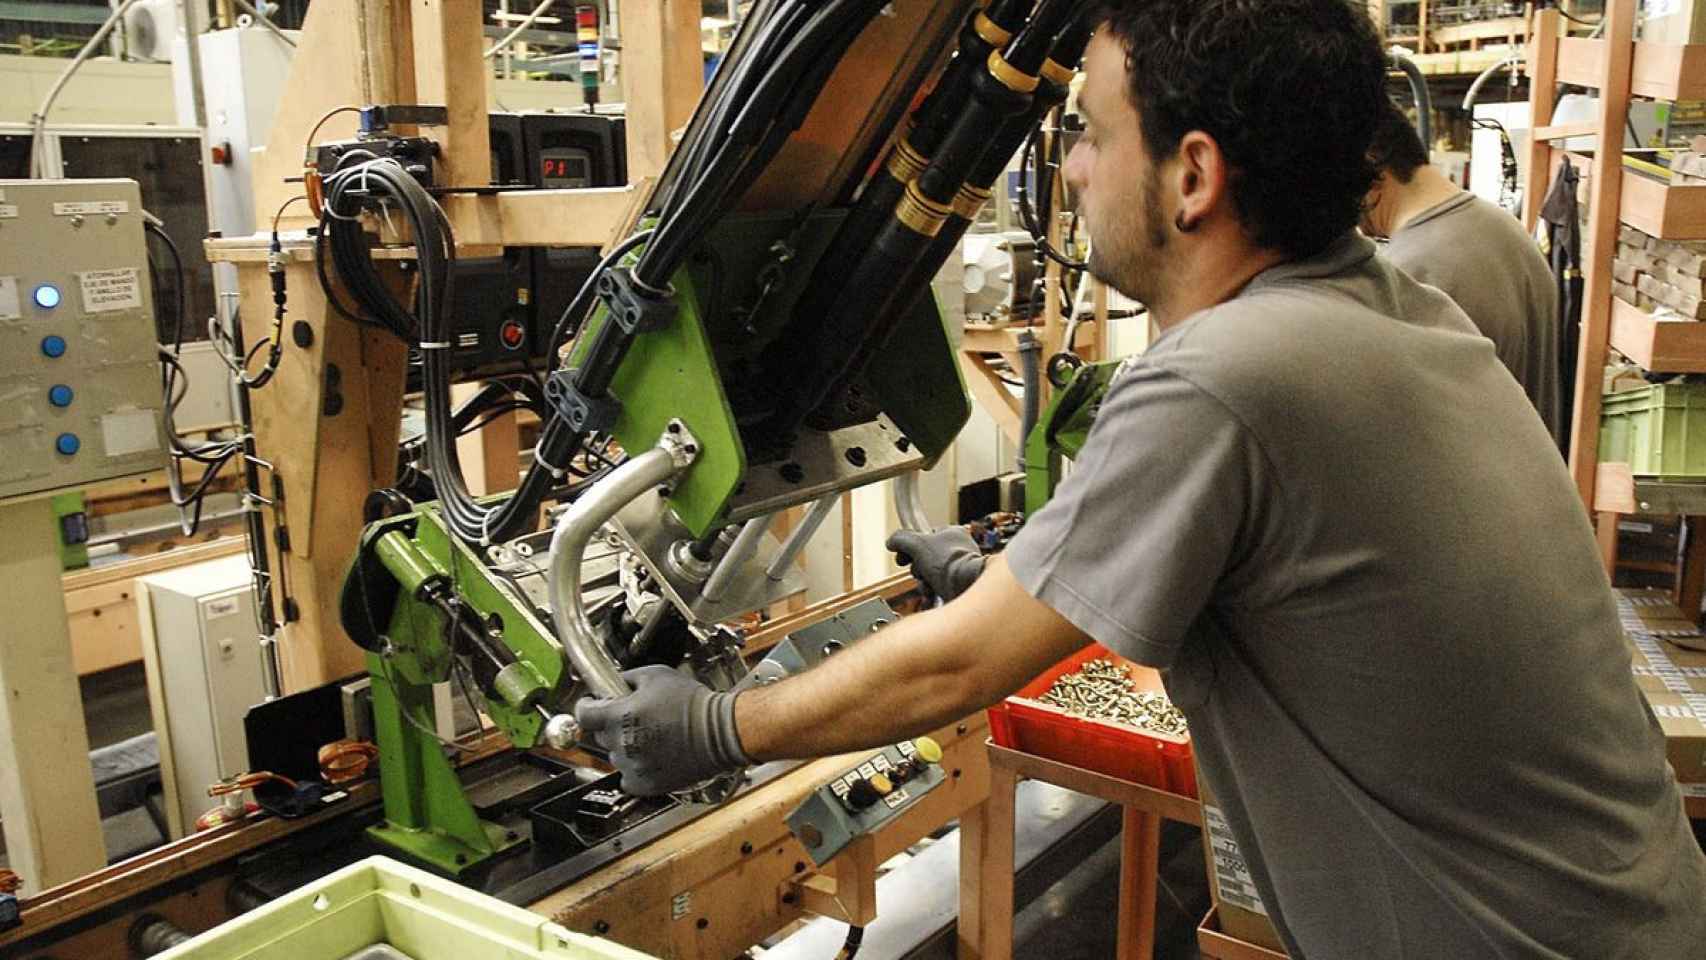 Un operario manipula una máquina en una fábrica de Sevilla. El paro sube en 57.257 personas / EFE